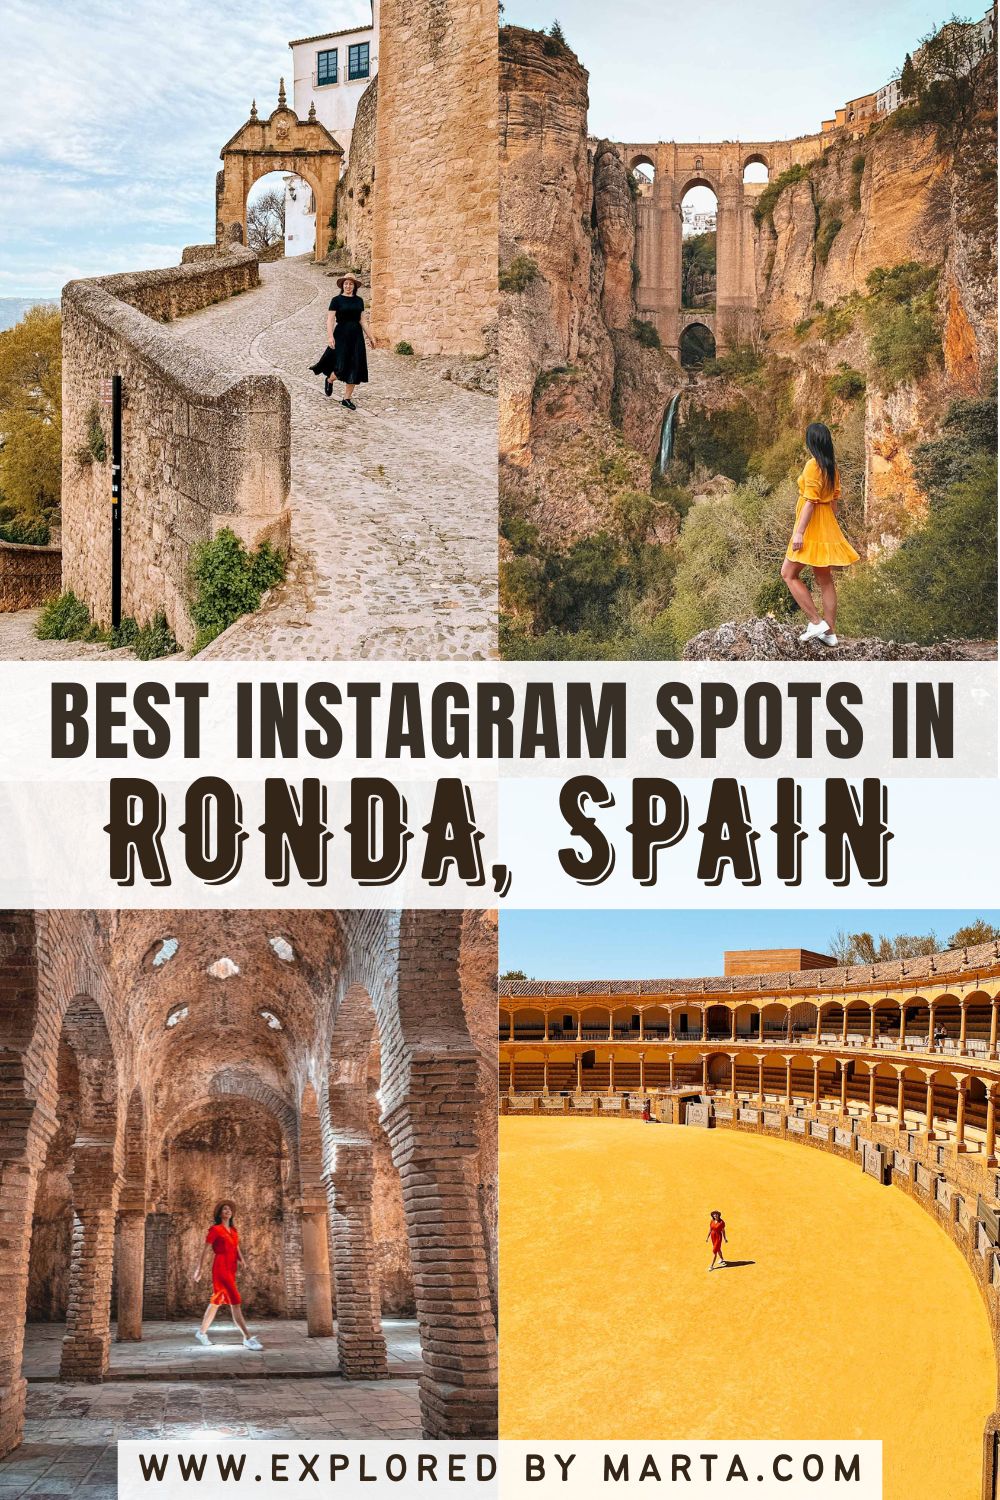 Must see Instagram spots in Ronda, Spain